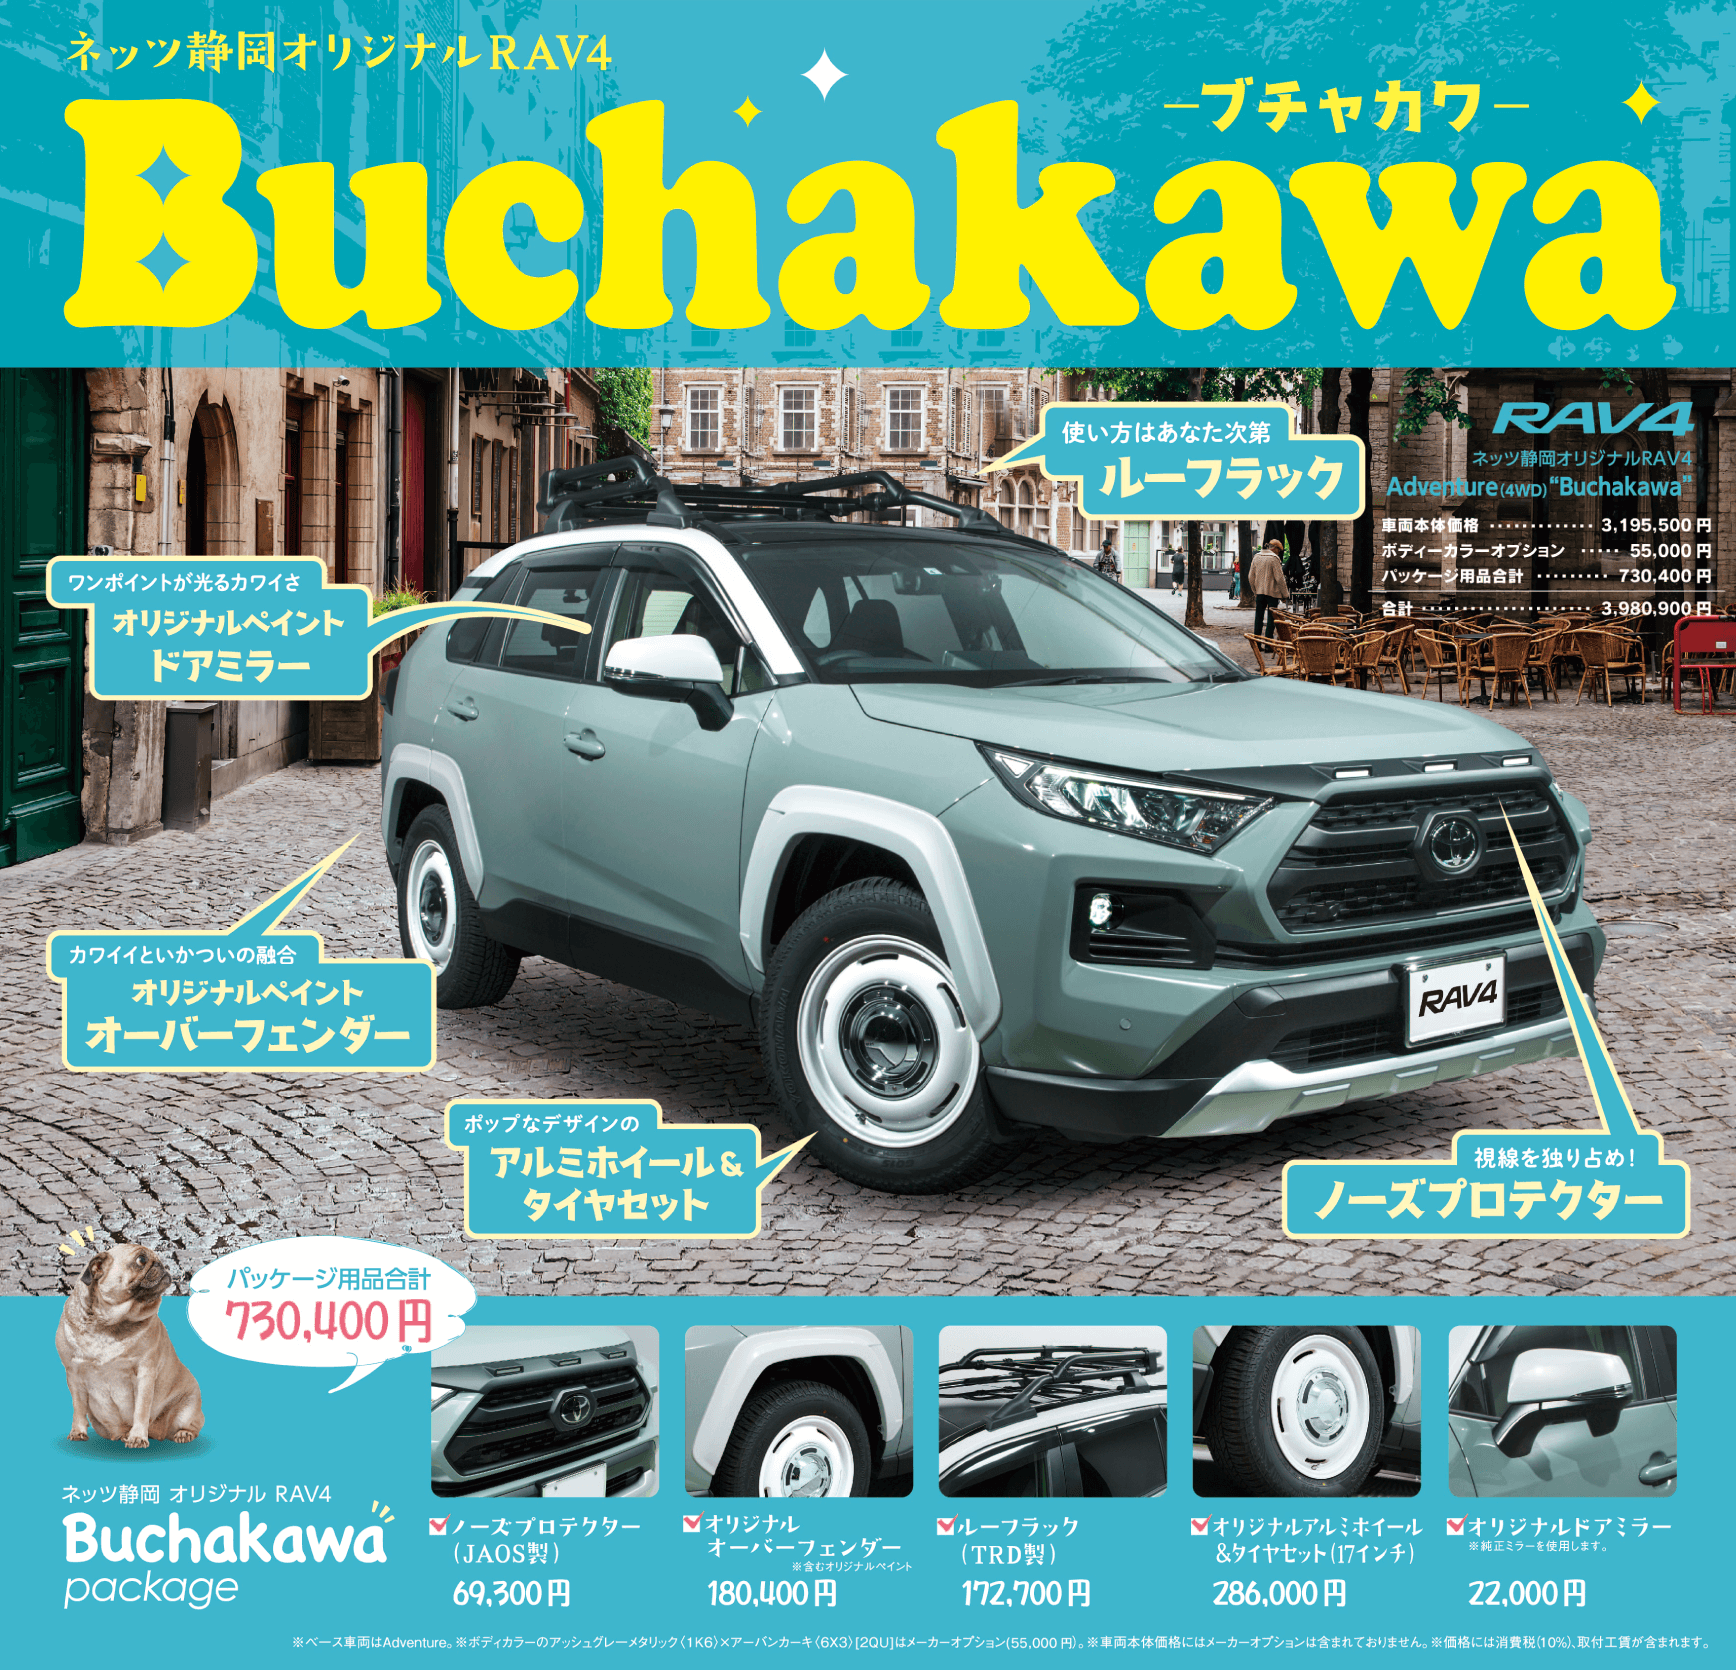 ネッツ静岡オリジナルRAV4 Buchakawa